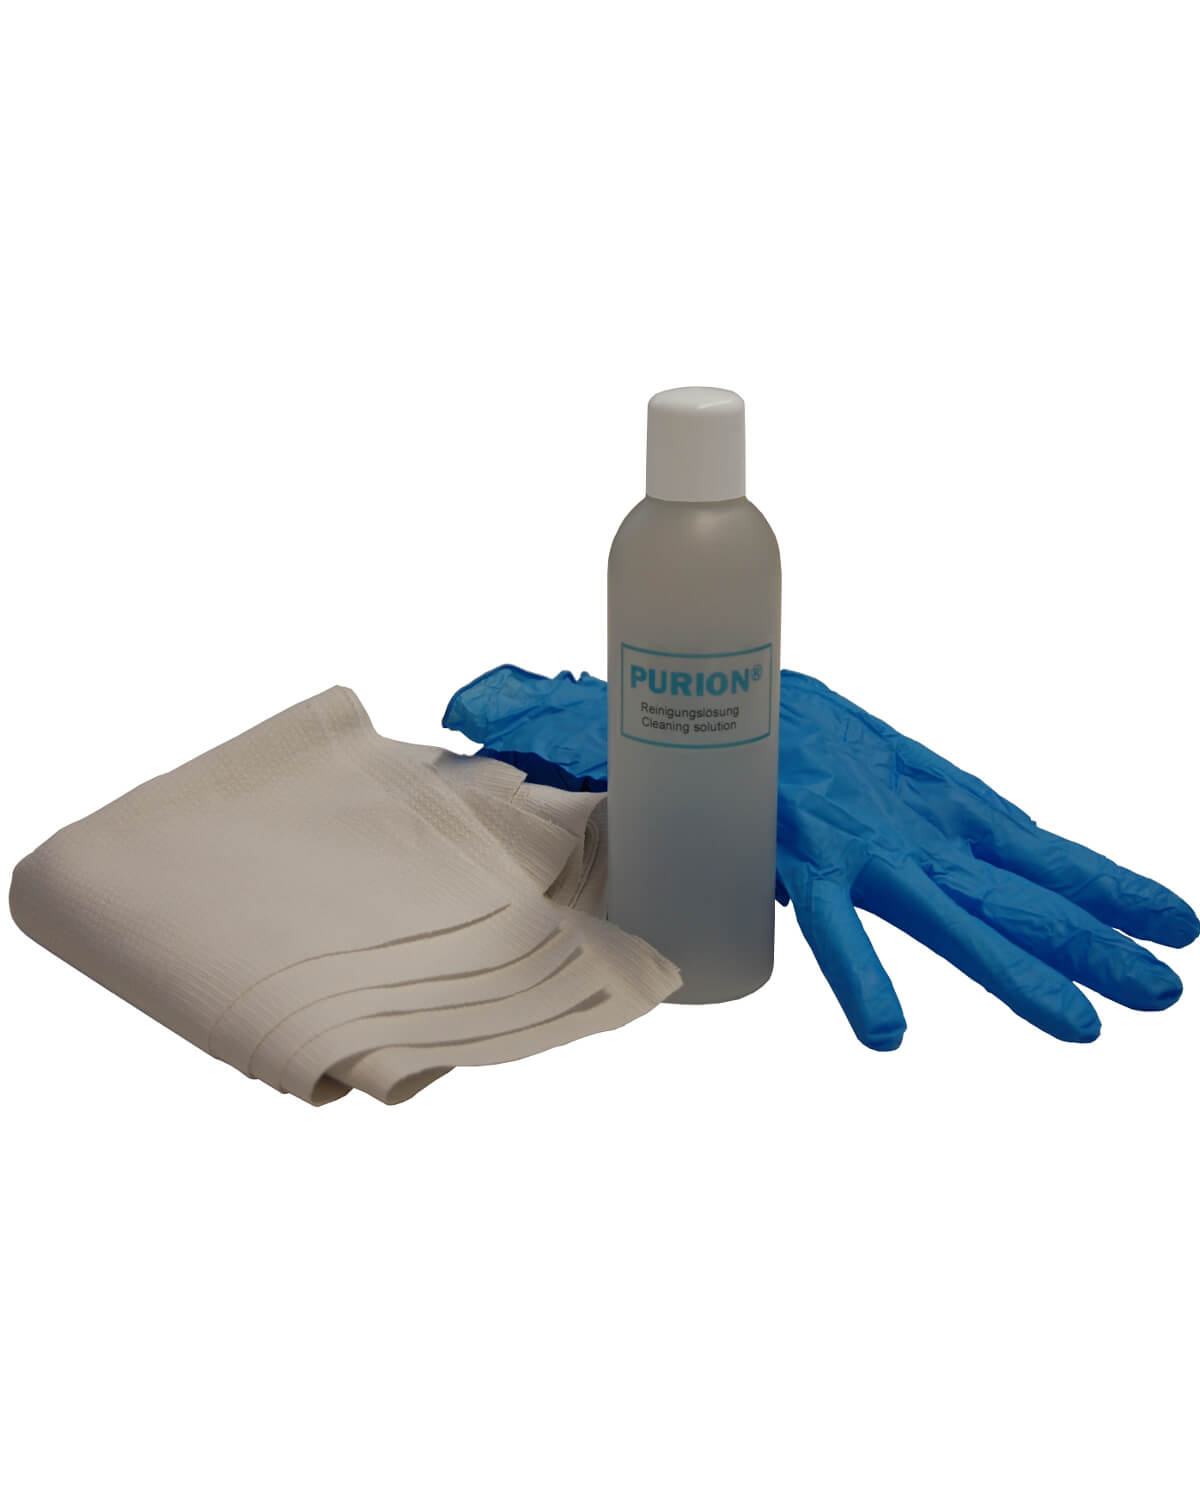 Ein Paar PURION 2501 PVC-U OTC Bundle-Handschuhe und eine Flasche Reinigungslösung der PURION GmbH für effektive UV-C-Desinfektionsverfahren.